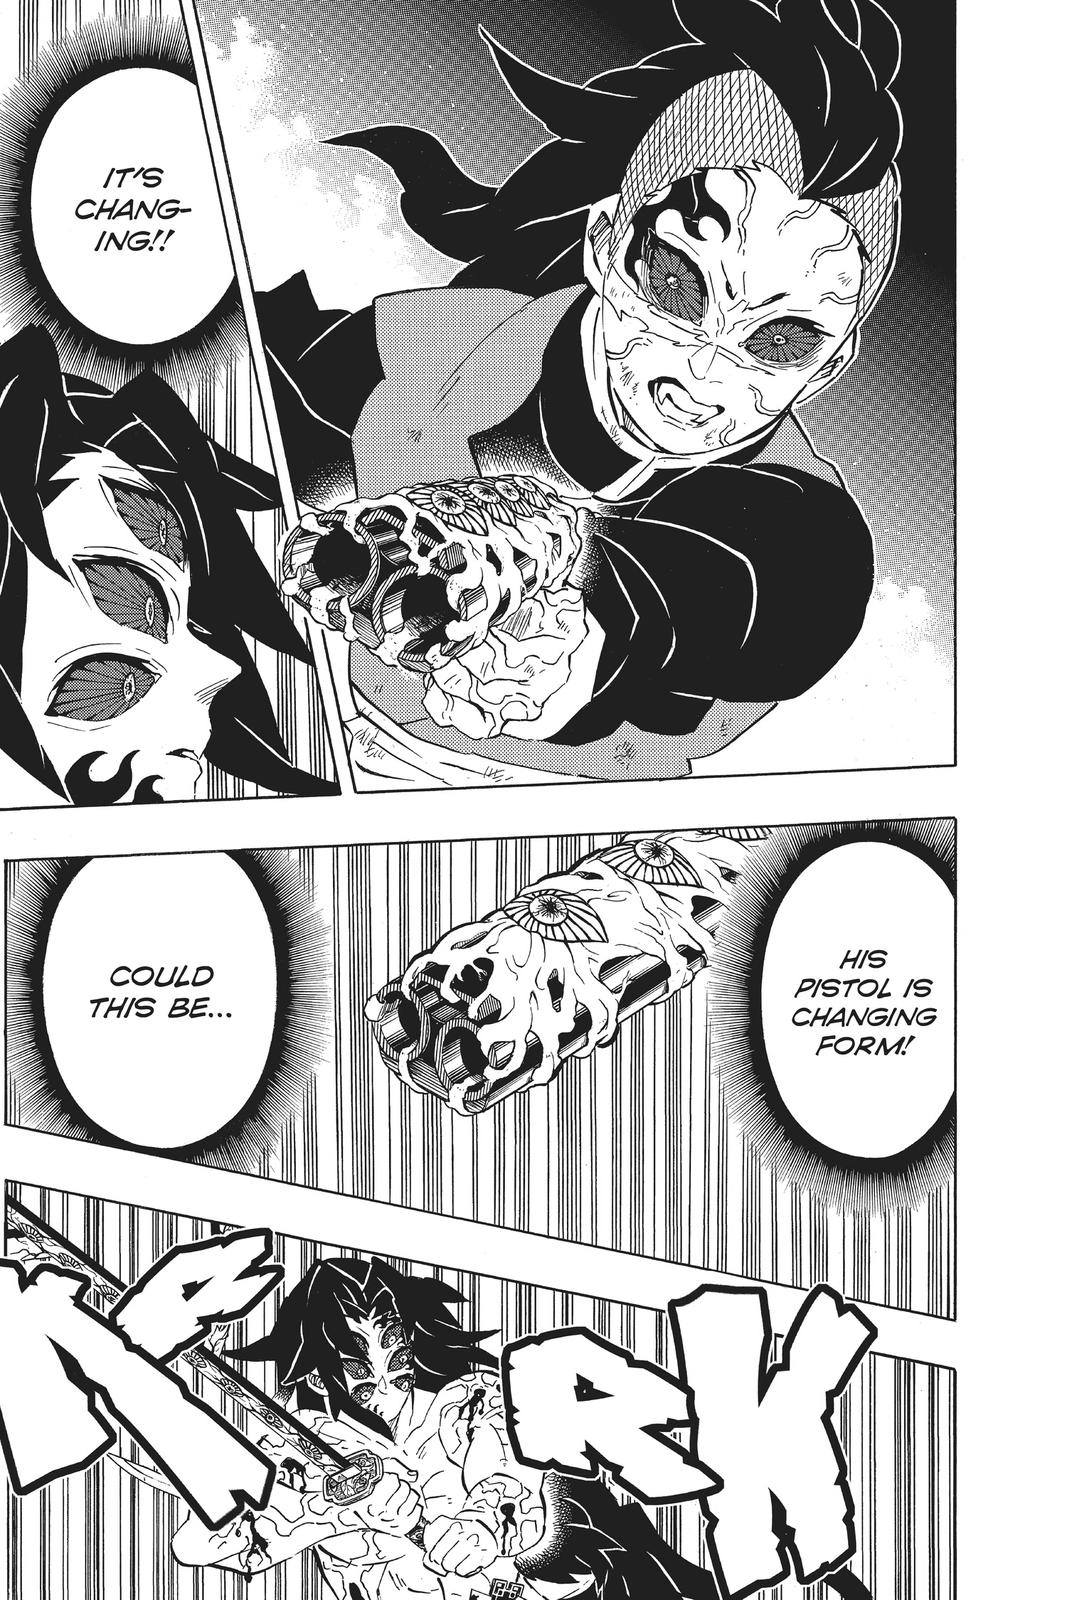 Demon Slayer Manga Manga Chapter - 174 - image 3